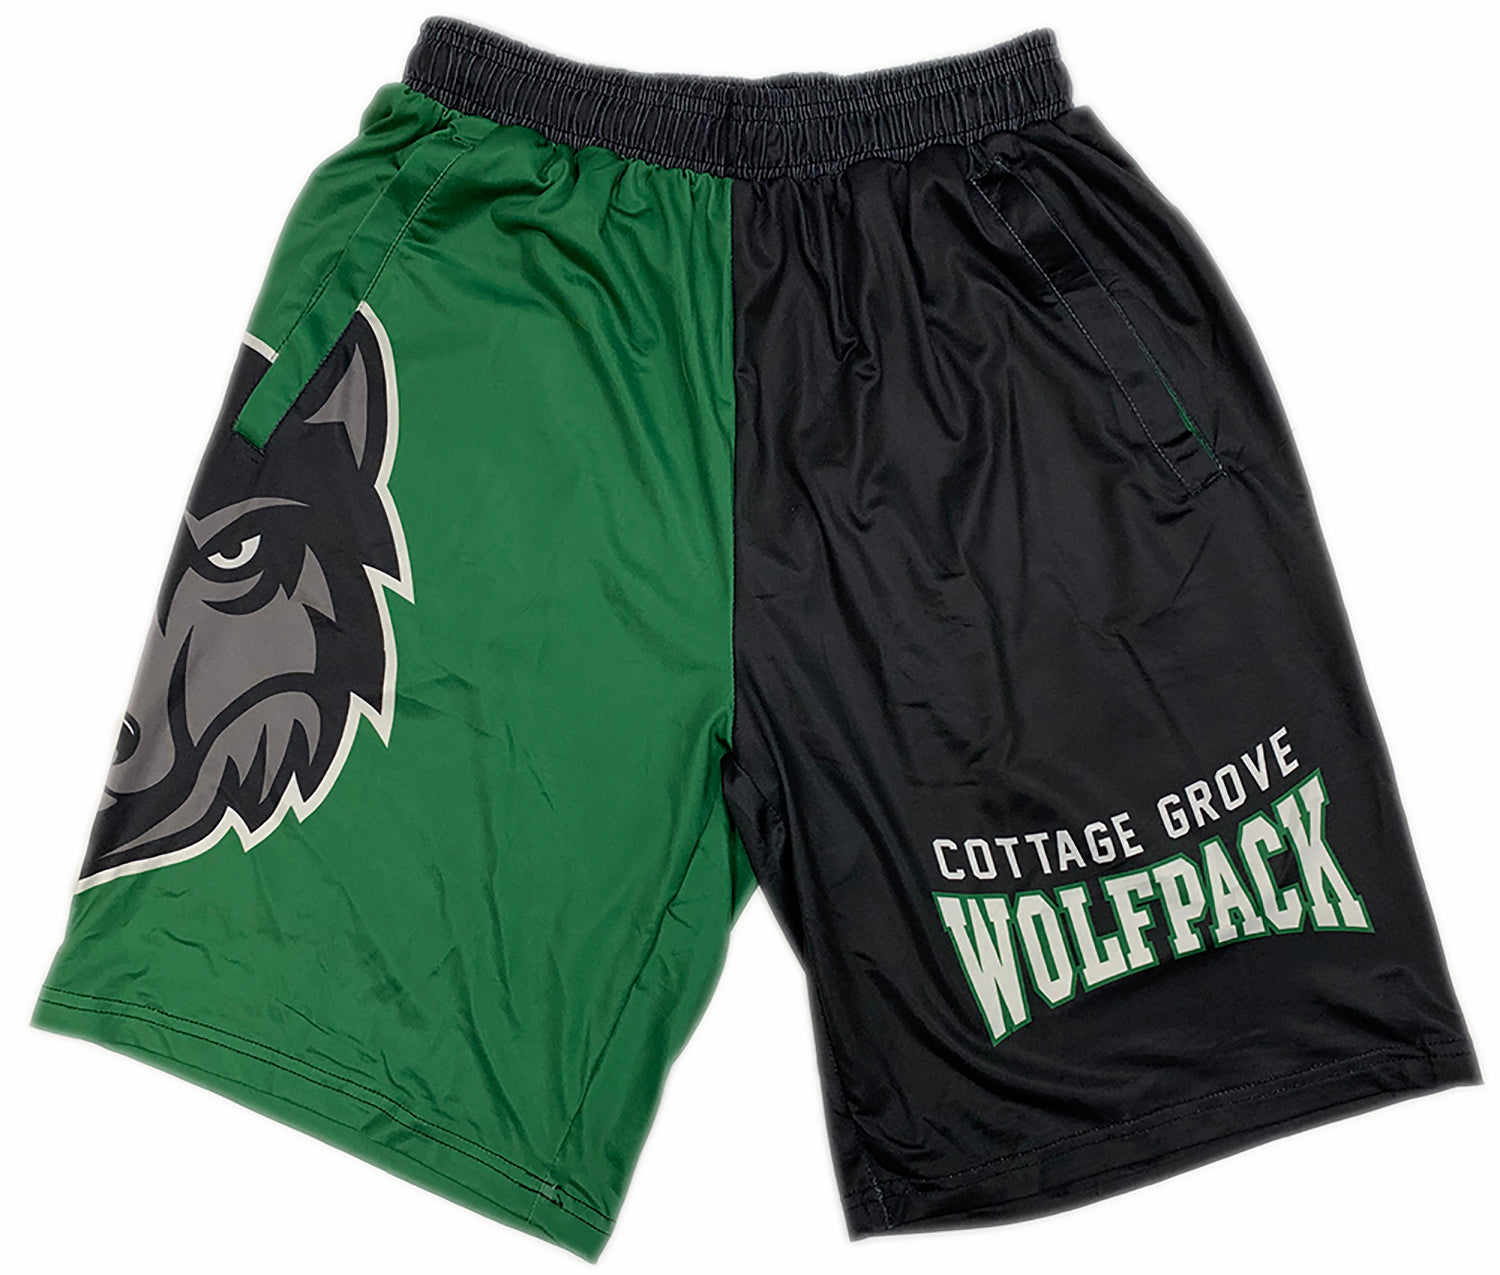 CG Wolfpack Ubix Pocket Shorts-Shorts-Advanced Sportswear